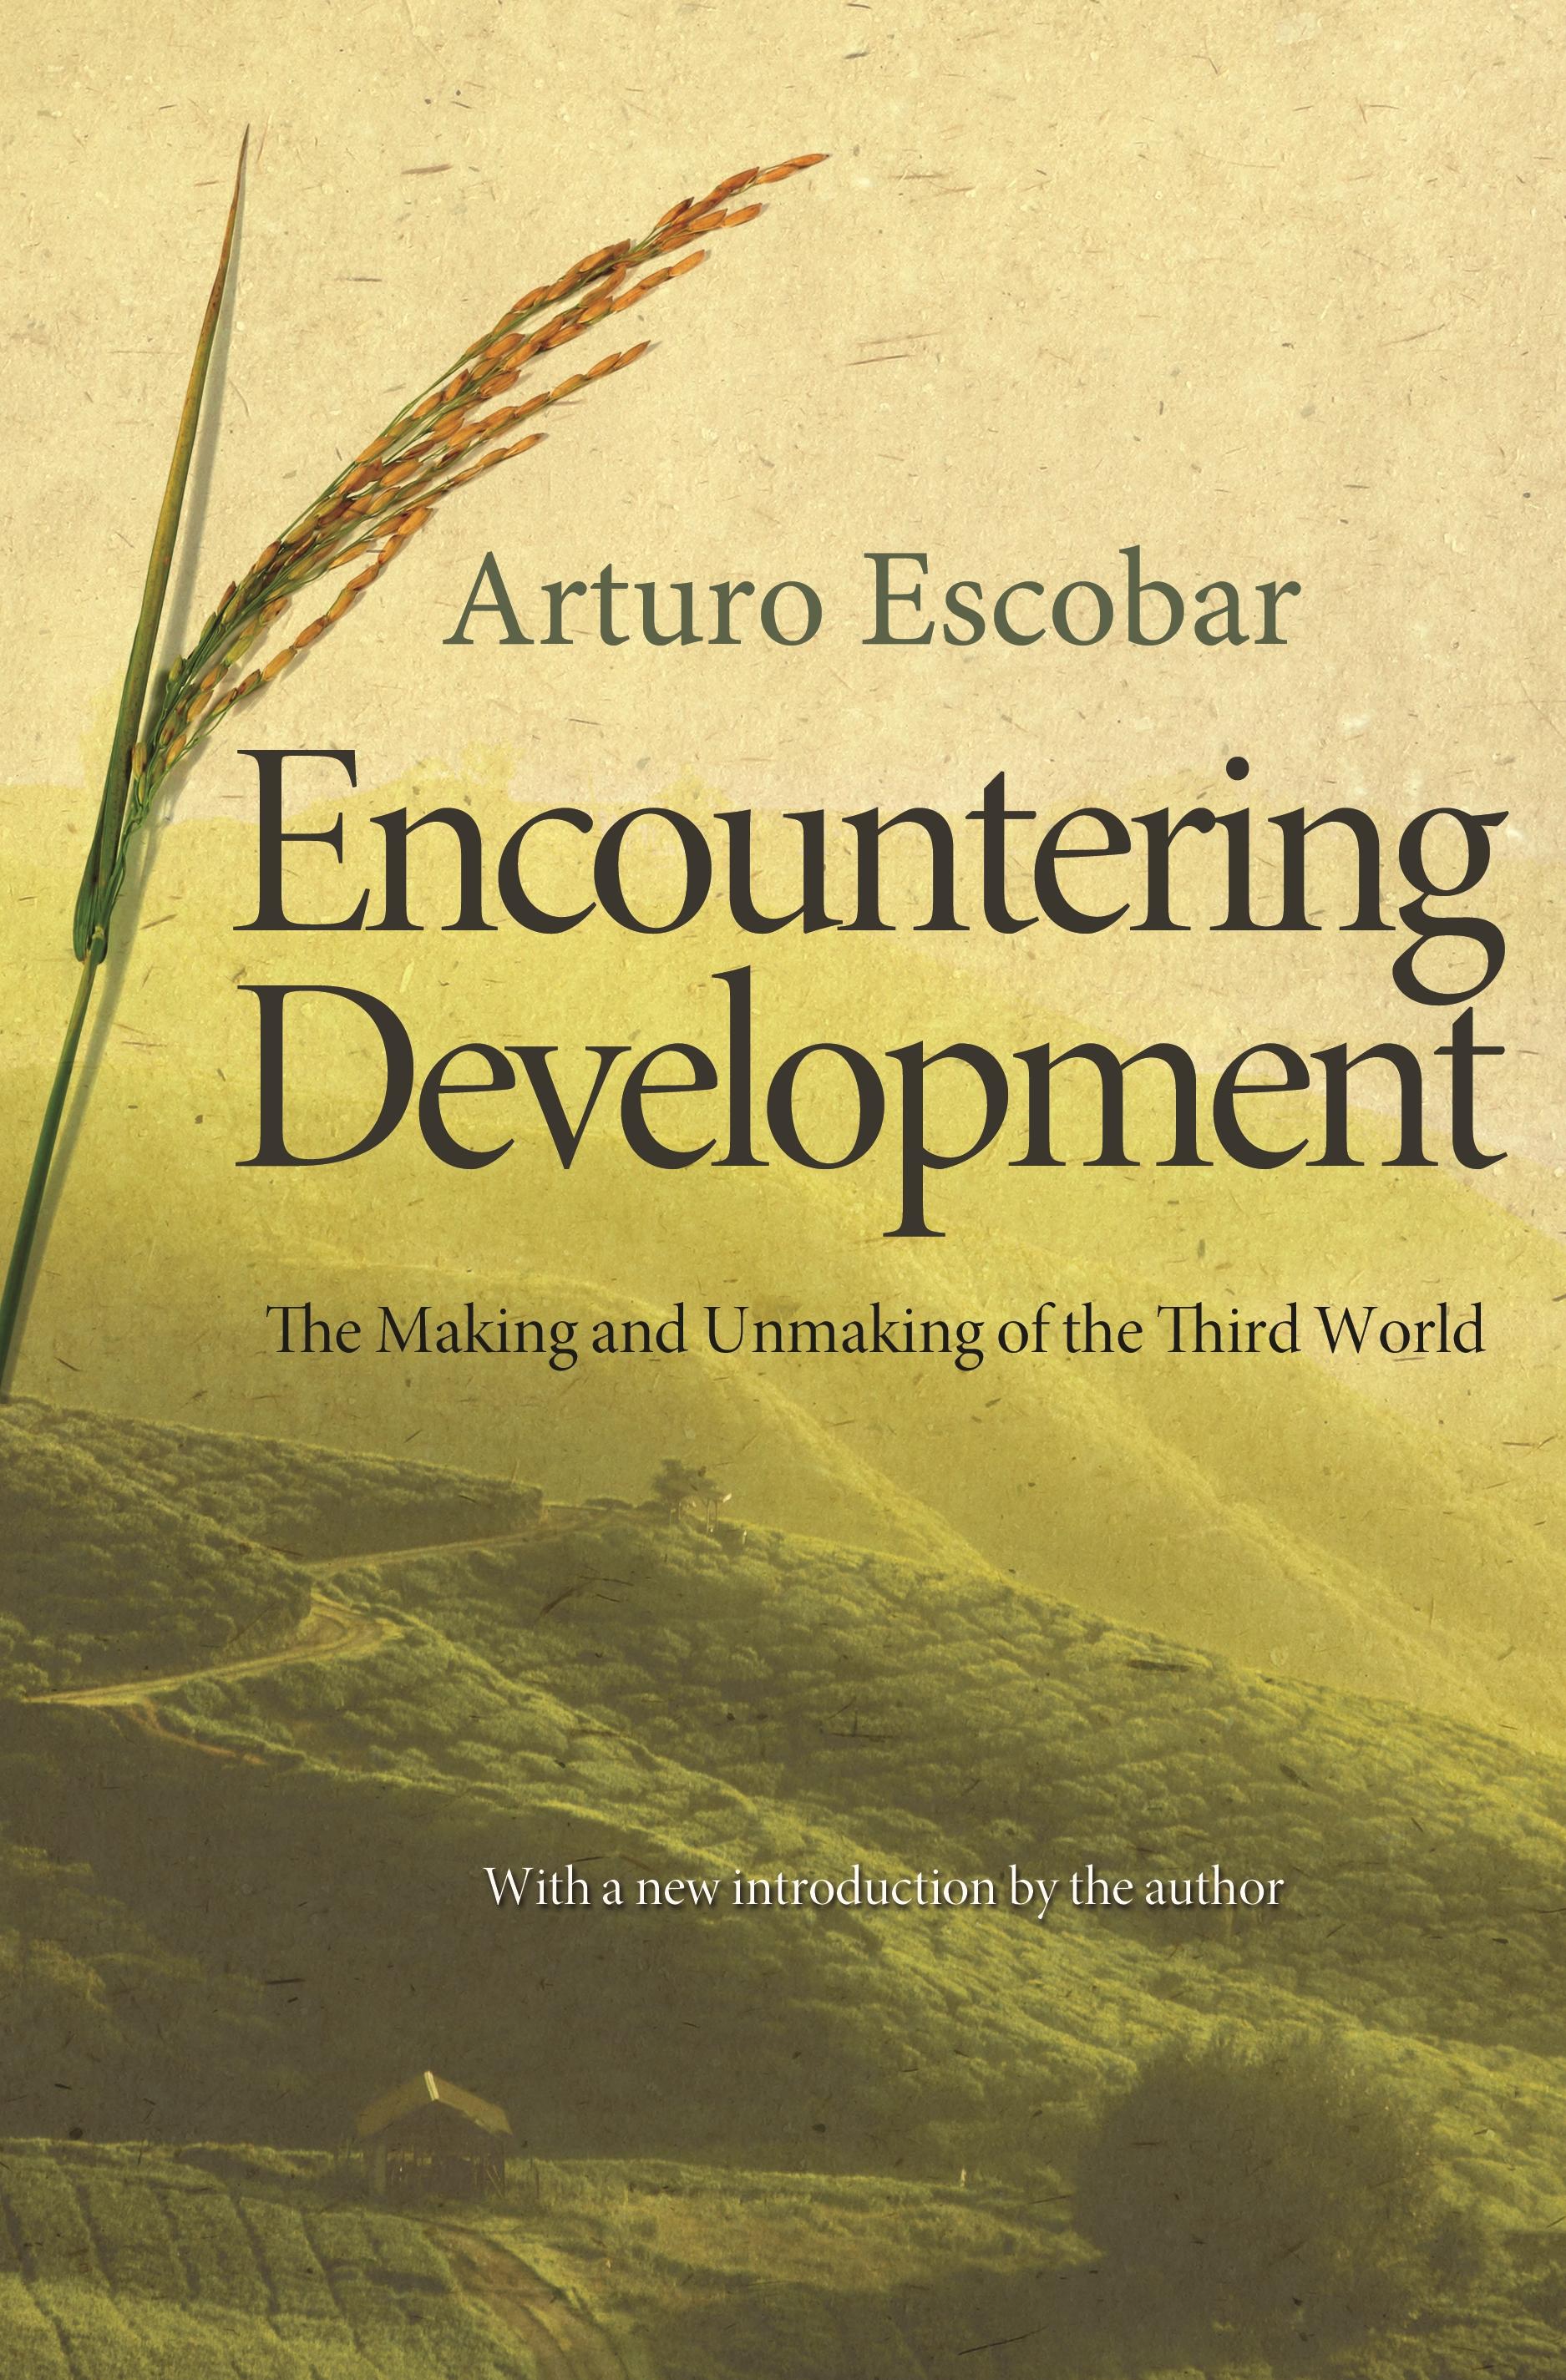 Encountering Development / The Making and Unmaking of the Third World / Arturo Escobar / Taschenbuch / Kartoniert / Broschiert / Englisch / 2011 / Princeton Univers. Press / EAN 9780691150451 - Escobar, Arturo